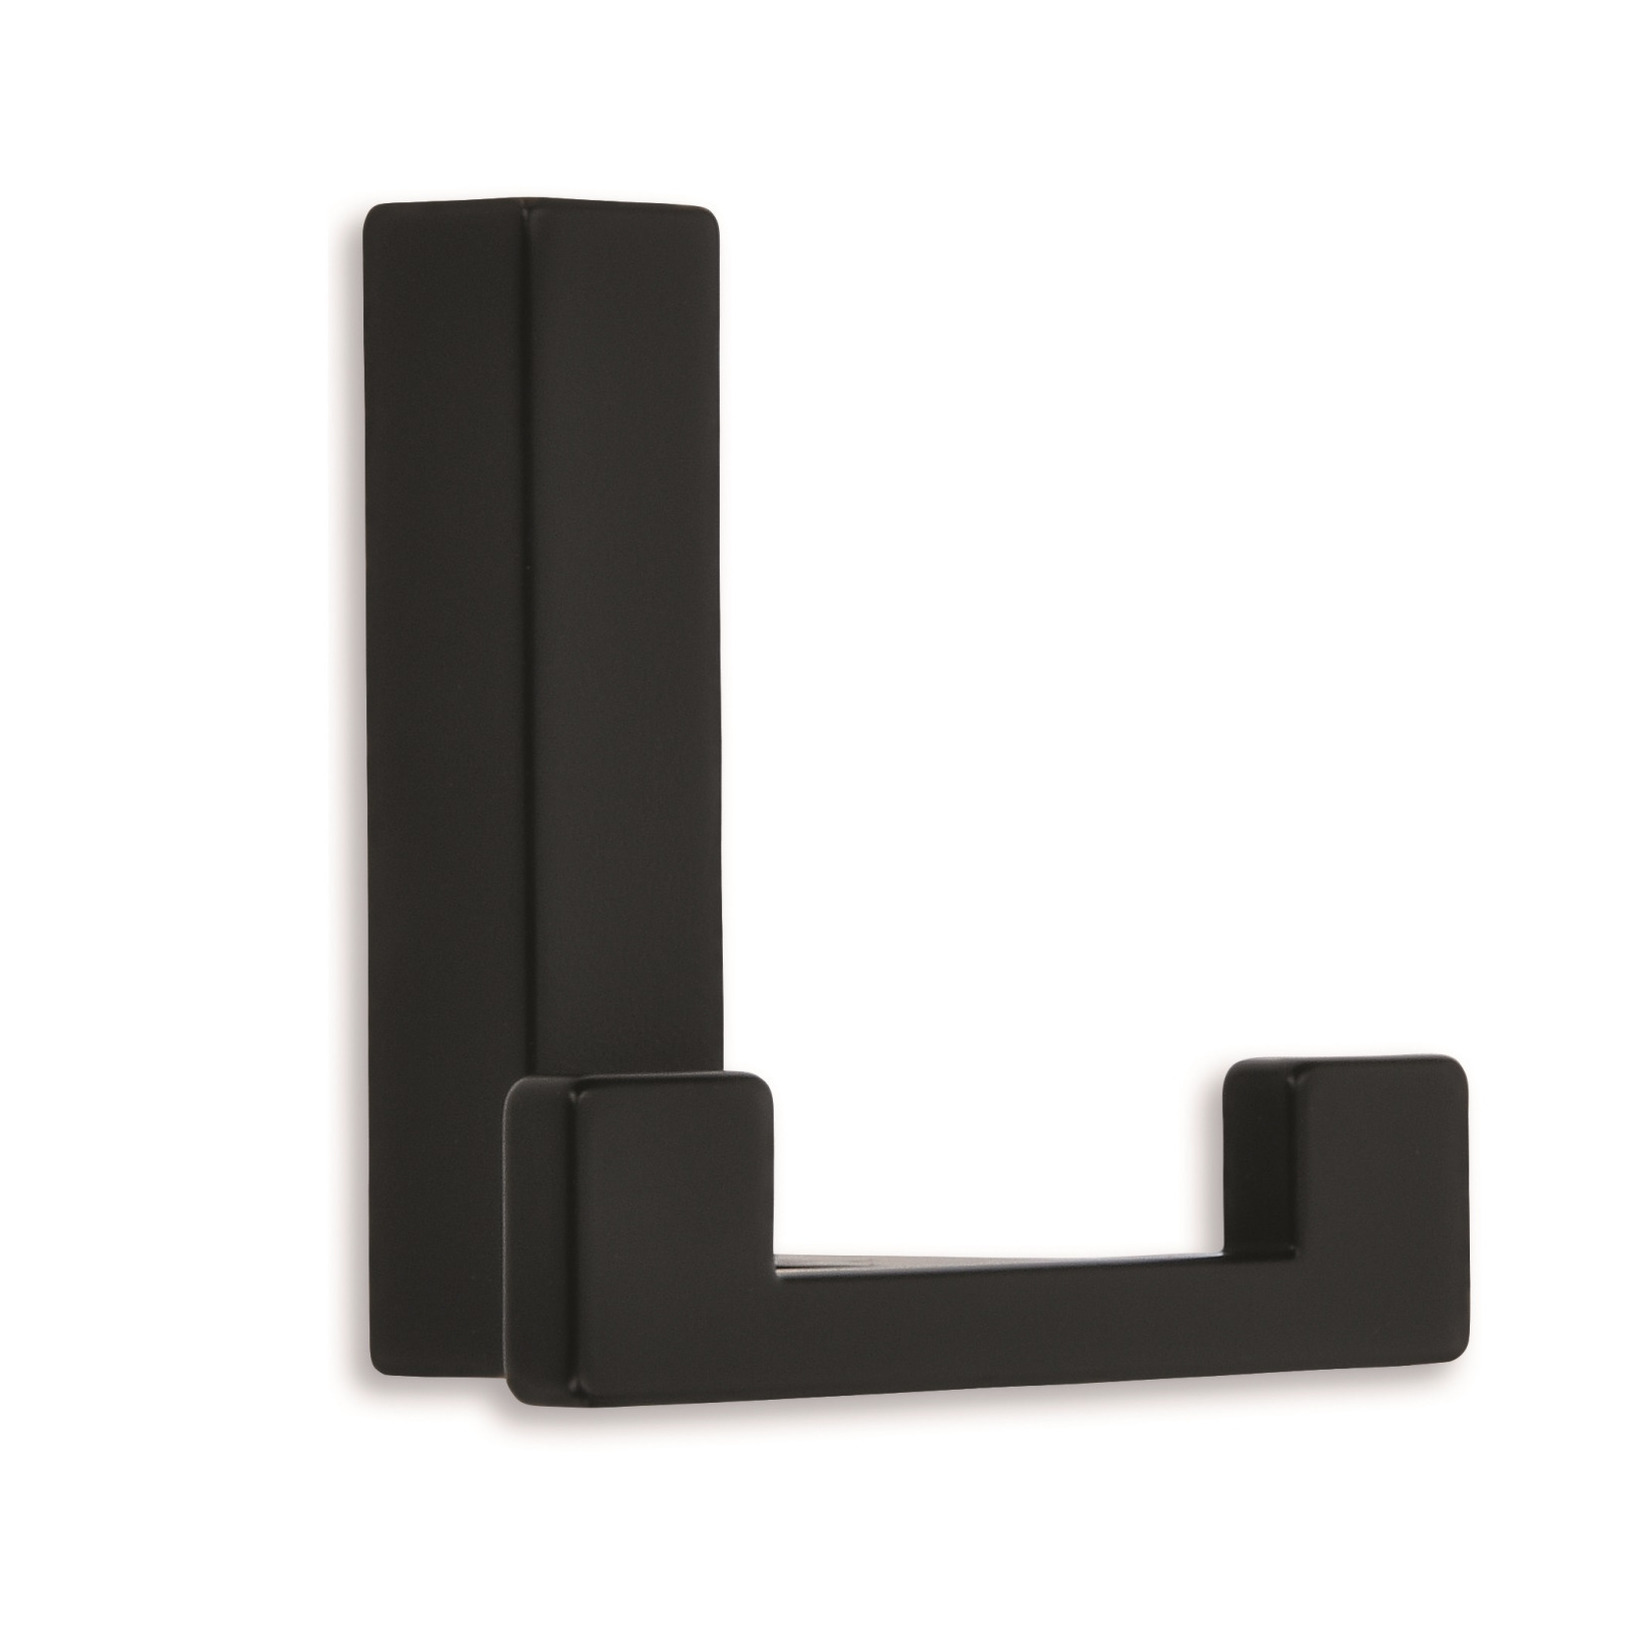 1x Luxe kapstokhaken-jashaken-kapstokhaakjes metaal modern zwart dubbele haak 4 x 6,1 cm